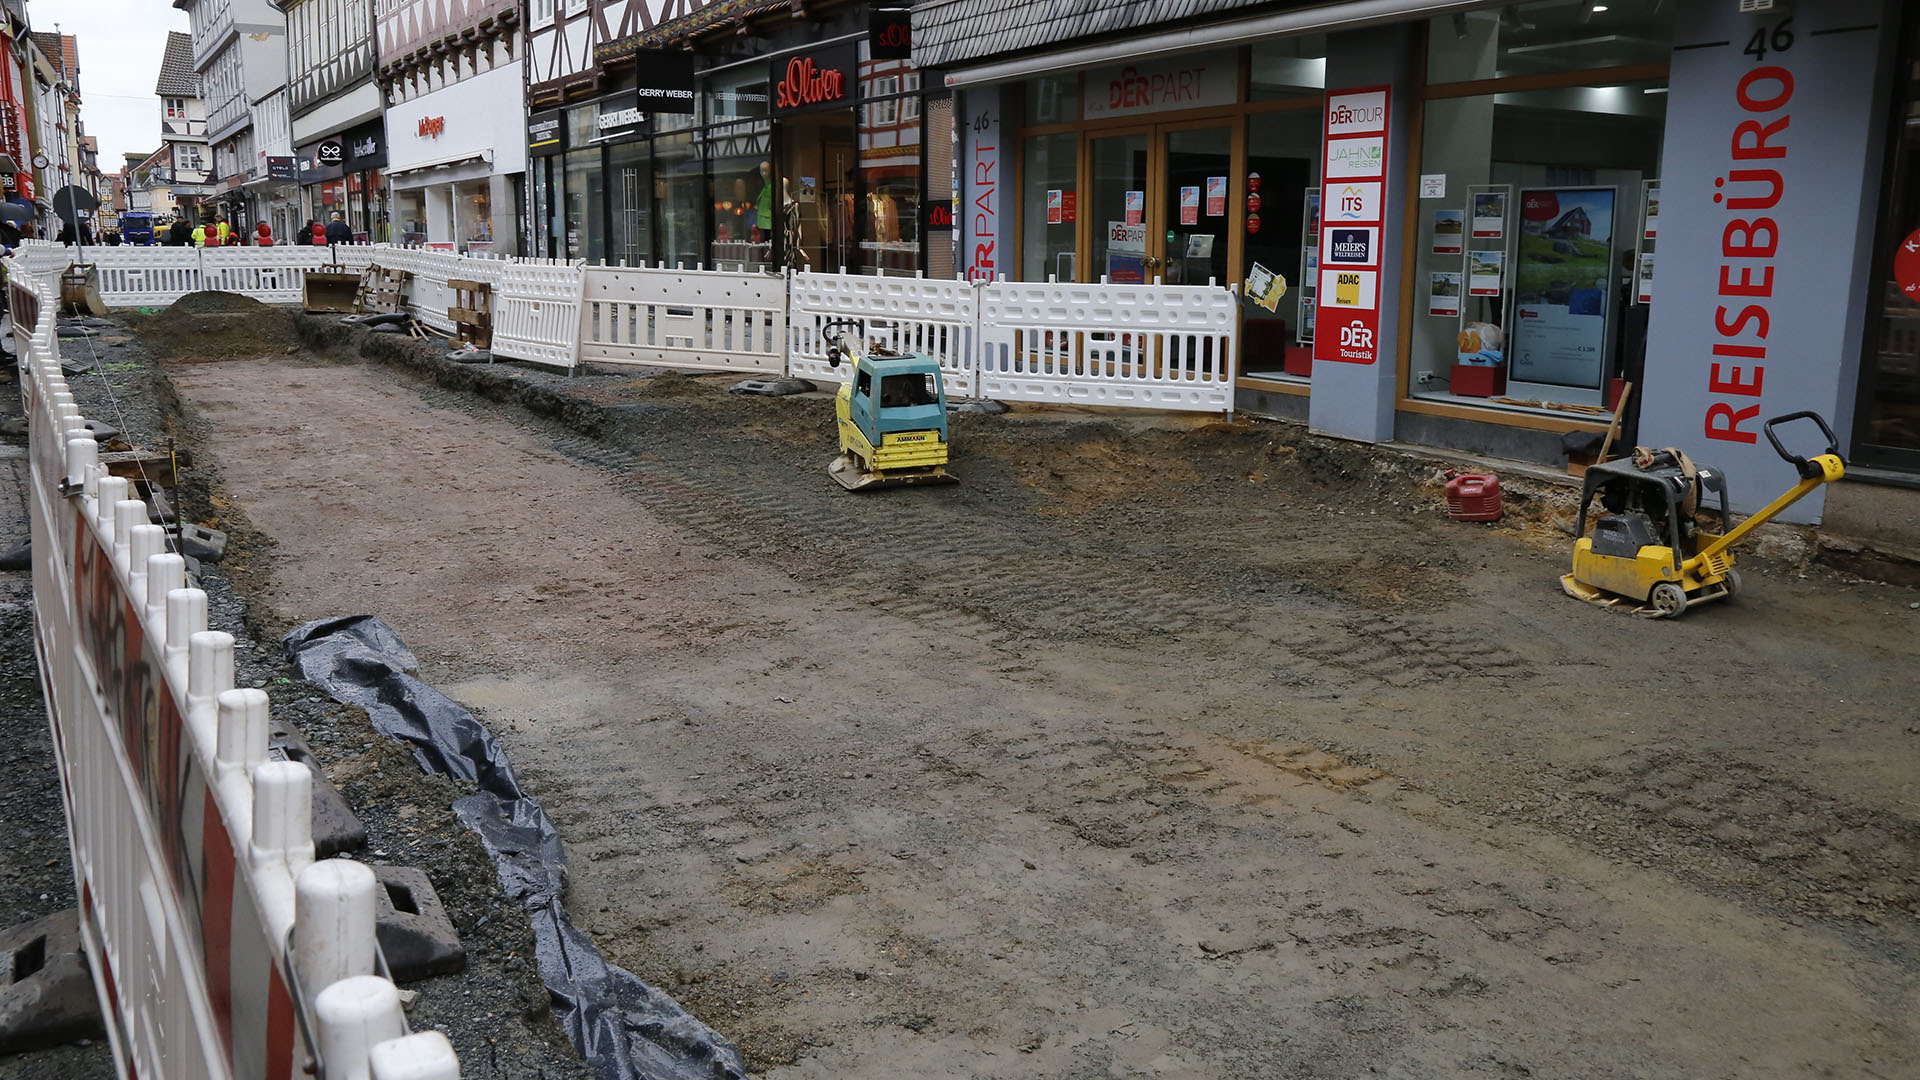 Bild vergrößern: Der mittlere Teil der Fußgängerzone zwischen den Geschäften ist mit Baustellenbarken abgesperrt, rechts und links daneben ist ein Weg für Fußgänger. In der Absperrung sieht man einen zugeschütteten Baugraben